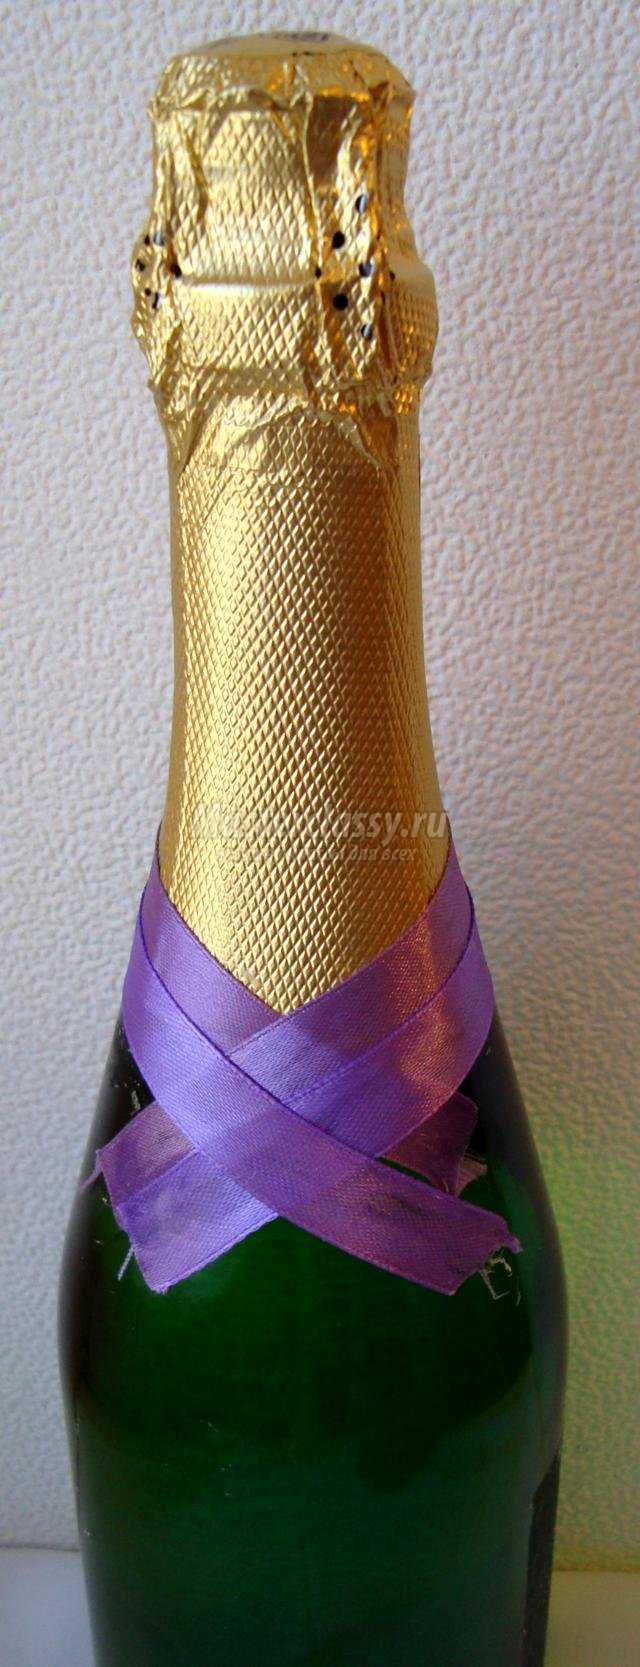 декор бутылки шампанского атласной лентой